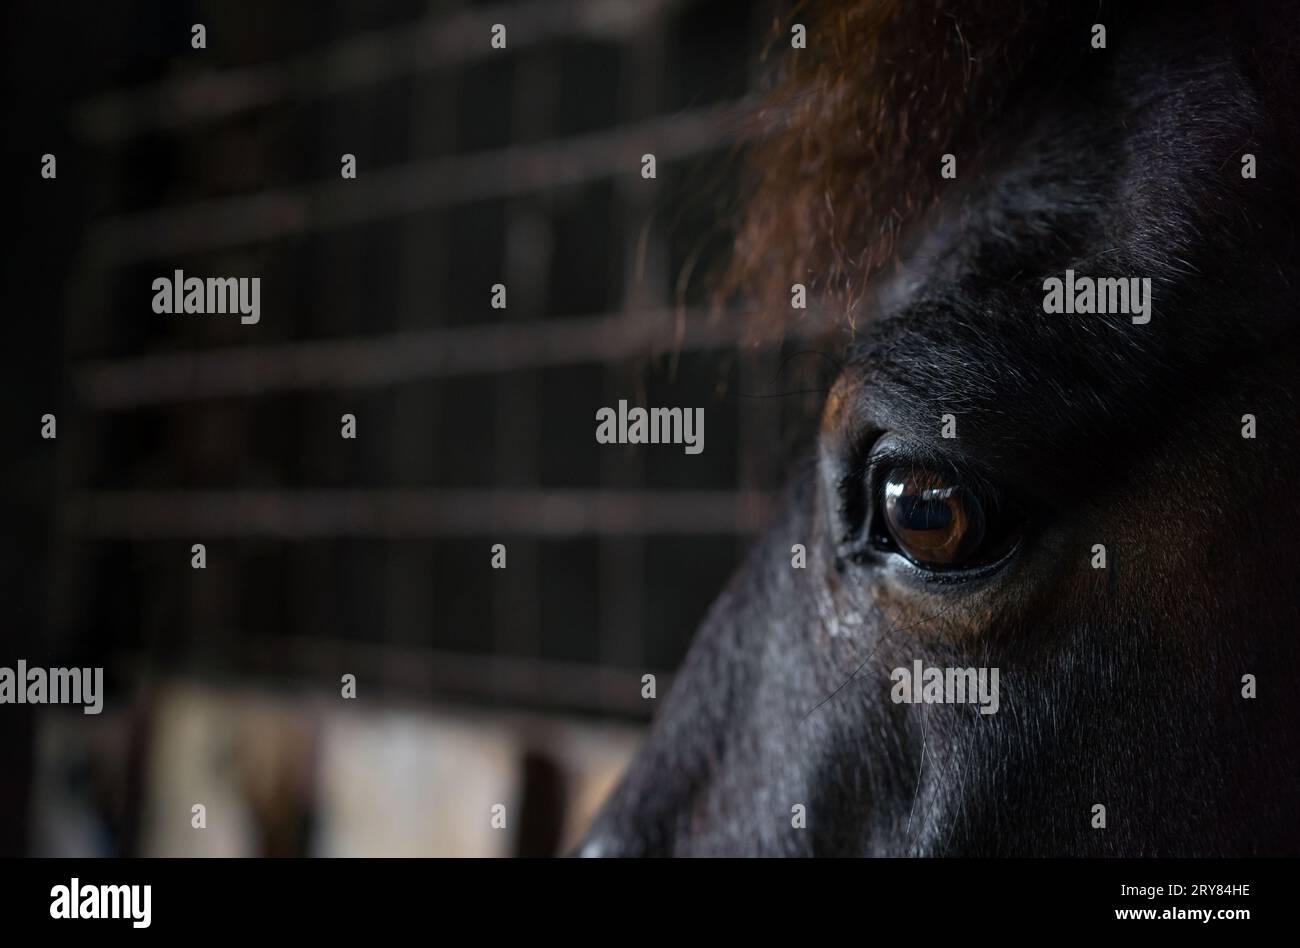 Eine Nahaufnahme der verängstigten Augen eines Pferdes im Stall. Reflexion in ihrem Auge. Stockfoto